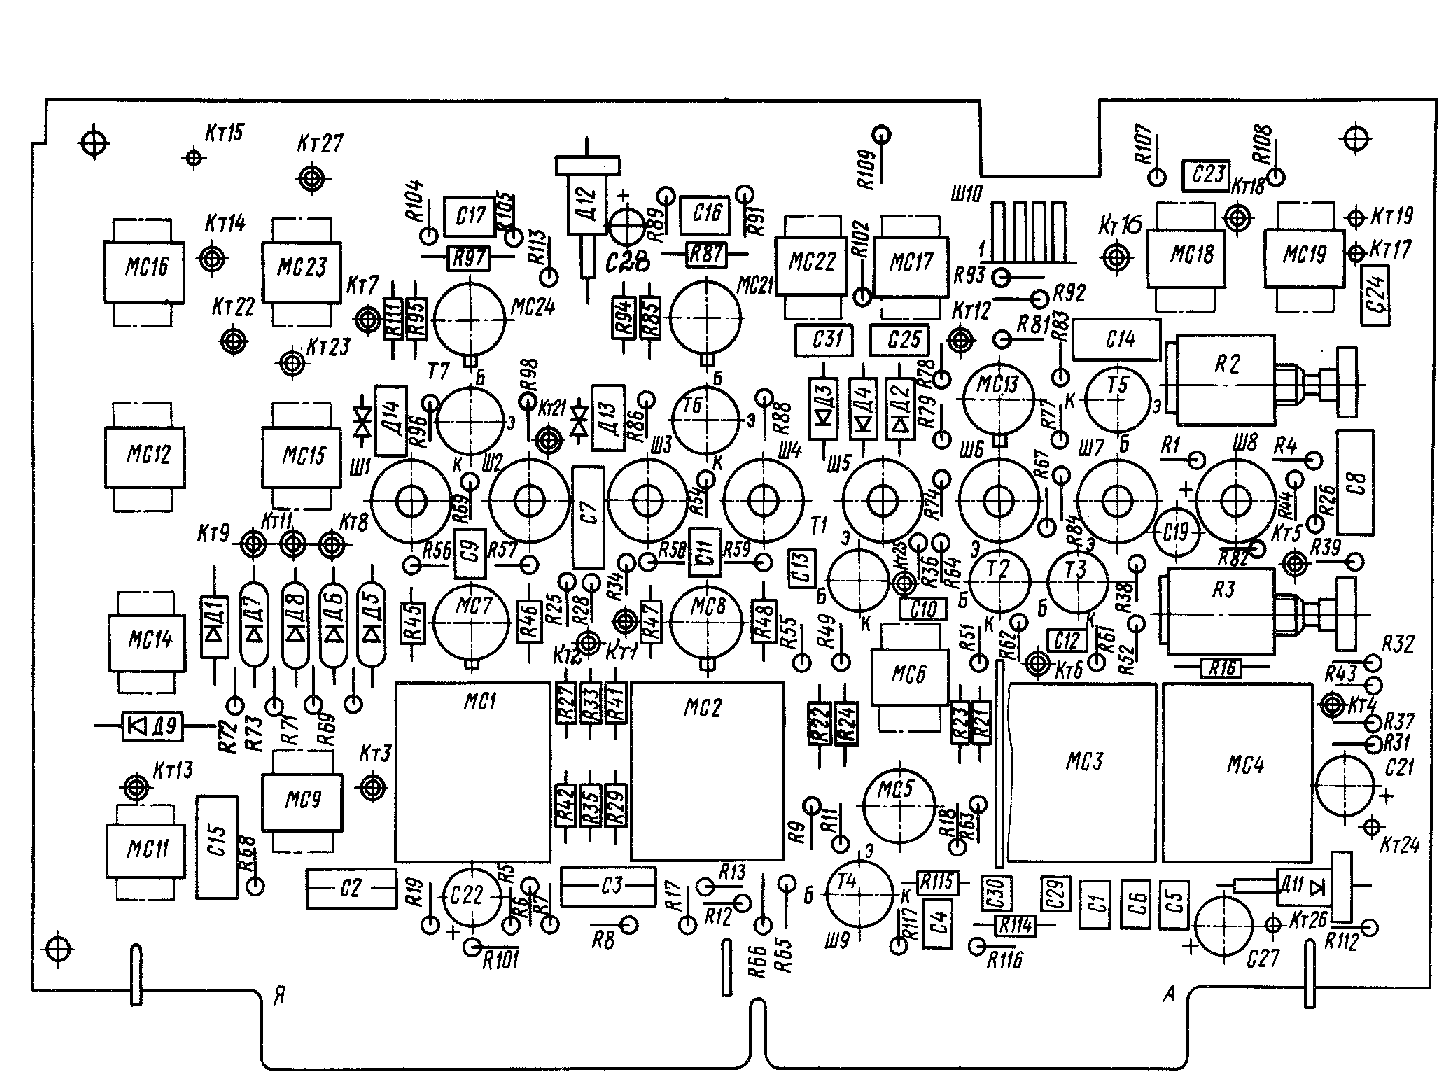 Осциллограф С1-103, схема